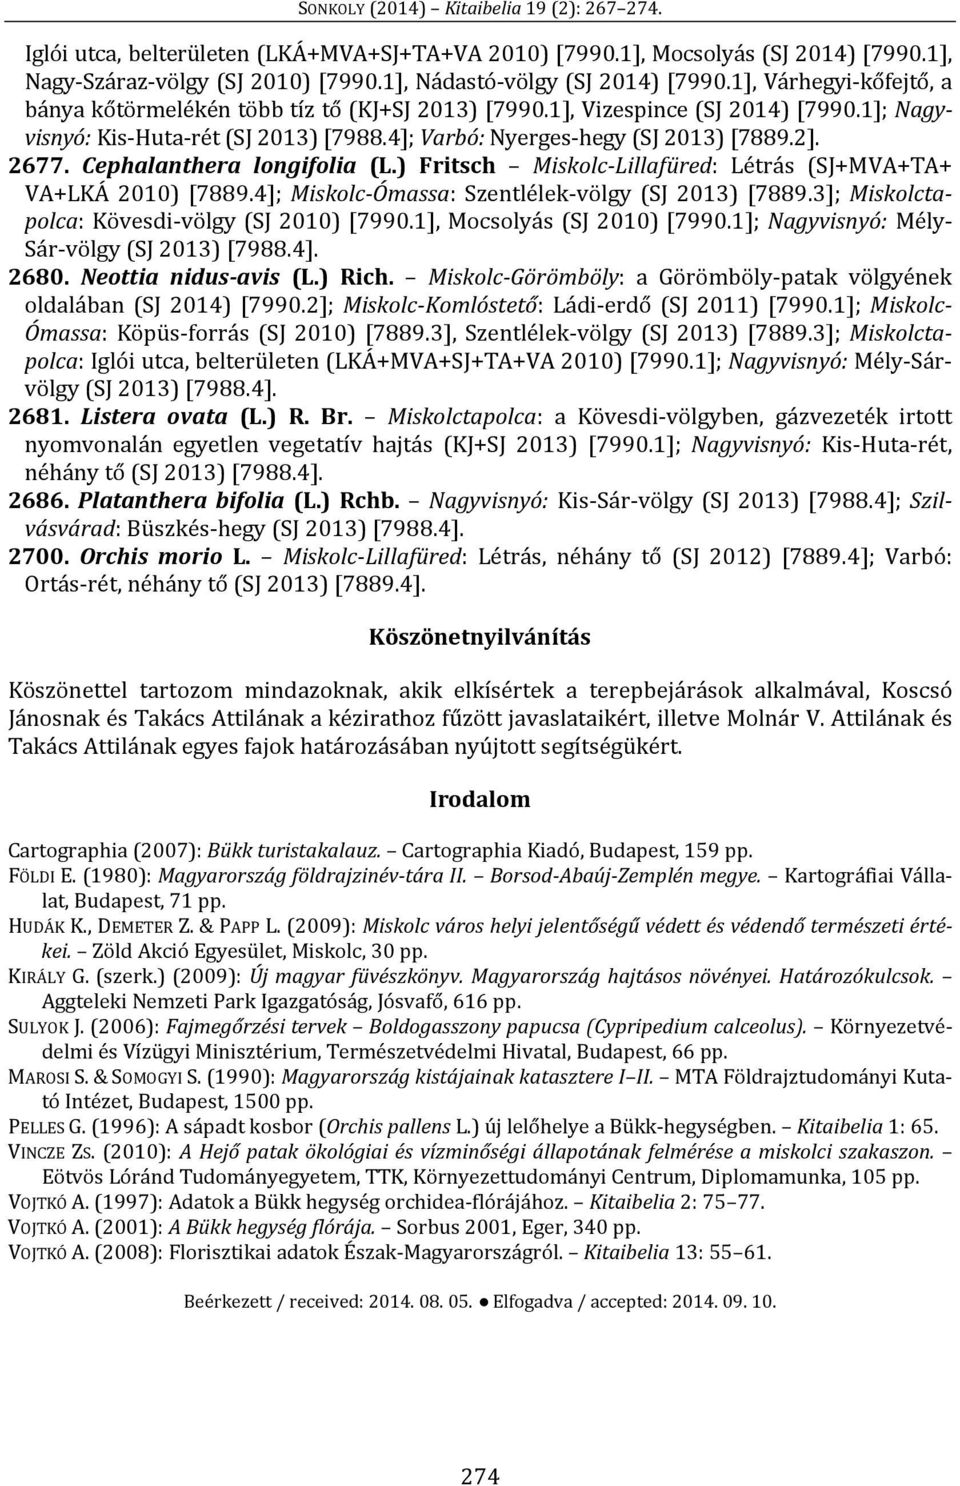 Cephalanthera longifolia (L.) Fritsch Miskolc-Lillafüred: Létrás (SJ+MVA+TA+ VA+LKÁ 2010) [7889.4]; Miskolc-Ómassa: Szentlélek-völgy (SJ 2013) [7889.3]; Miskolctapolca: Kövesdi-völgy (SJ 2010) [7990.